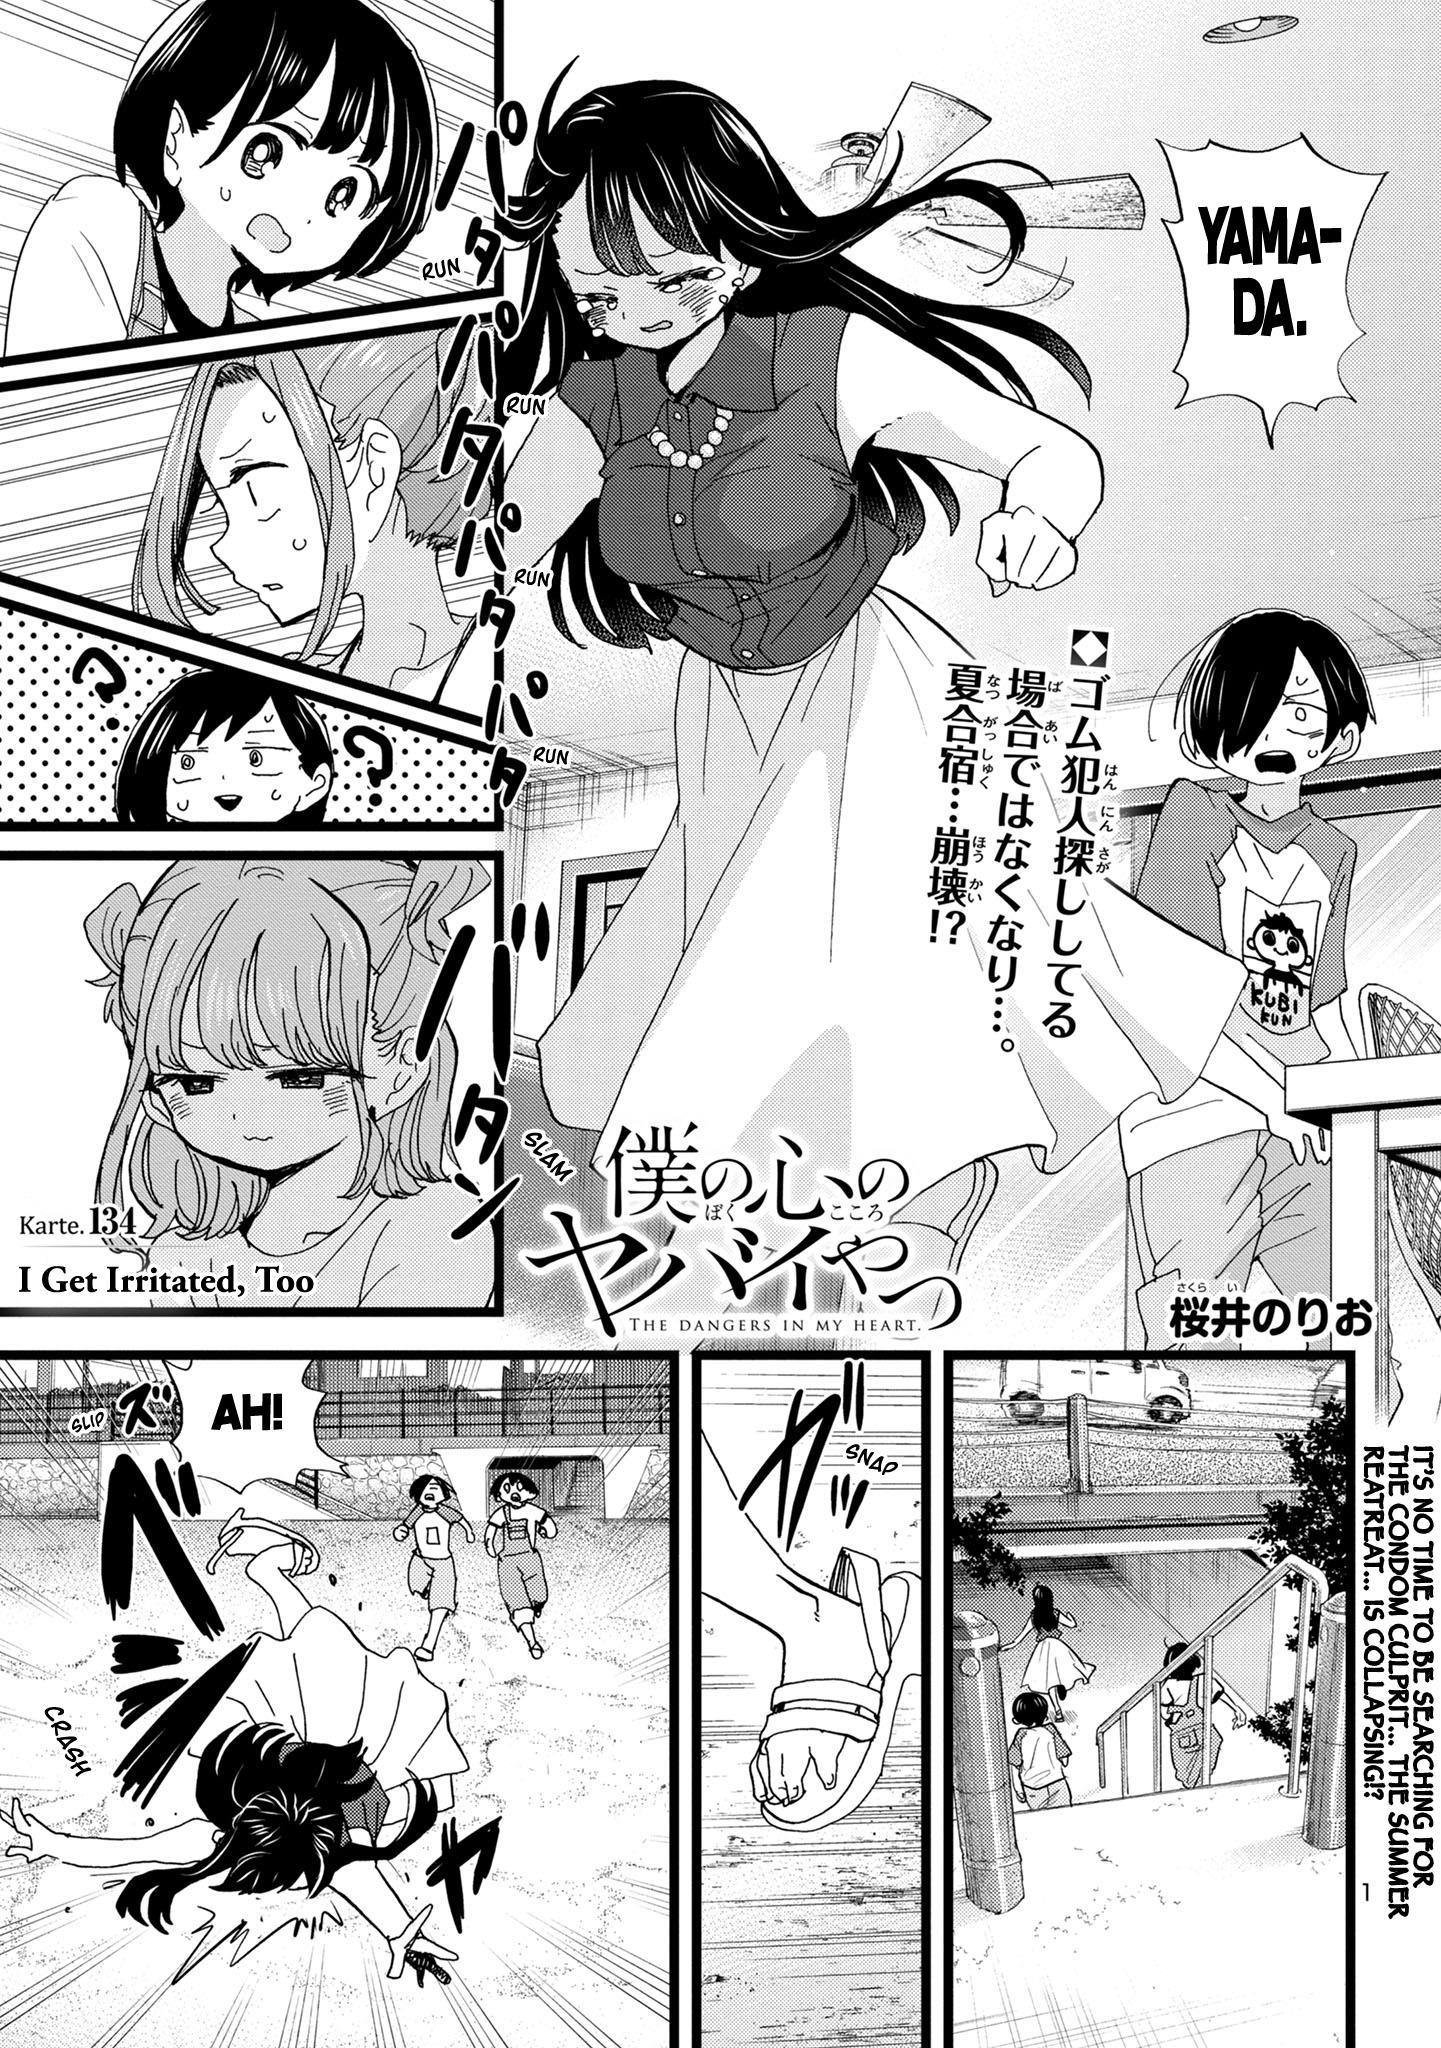 Boku no Kokoro no Yabai Yatsu Vol.7 Ch.89 Page 2 - Mangago